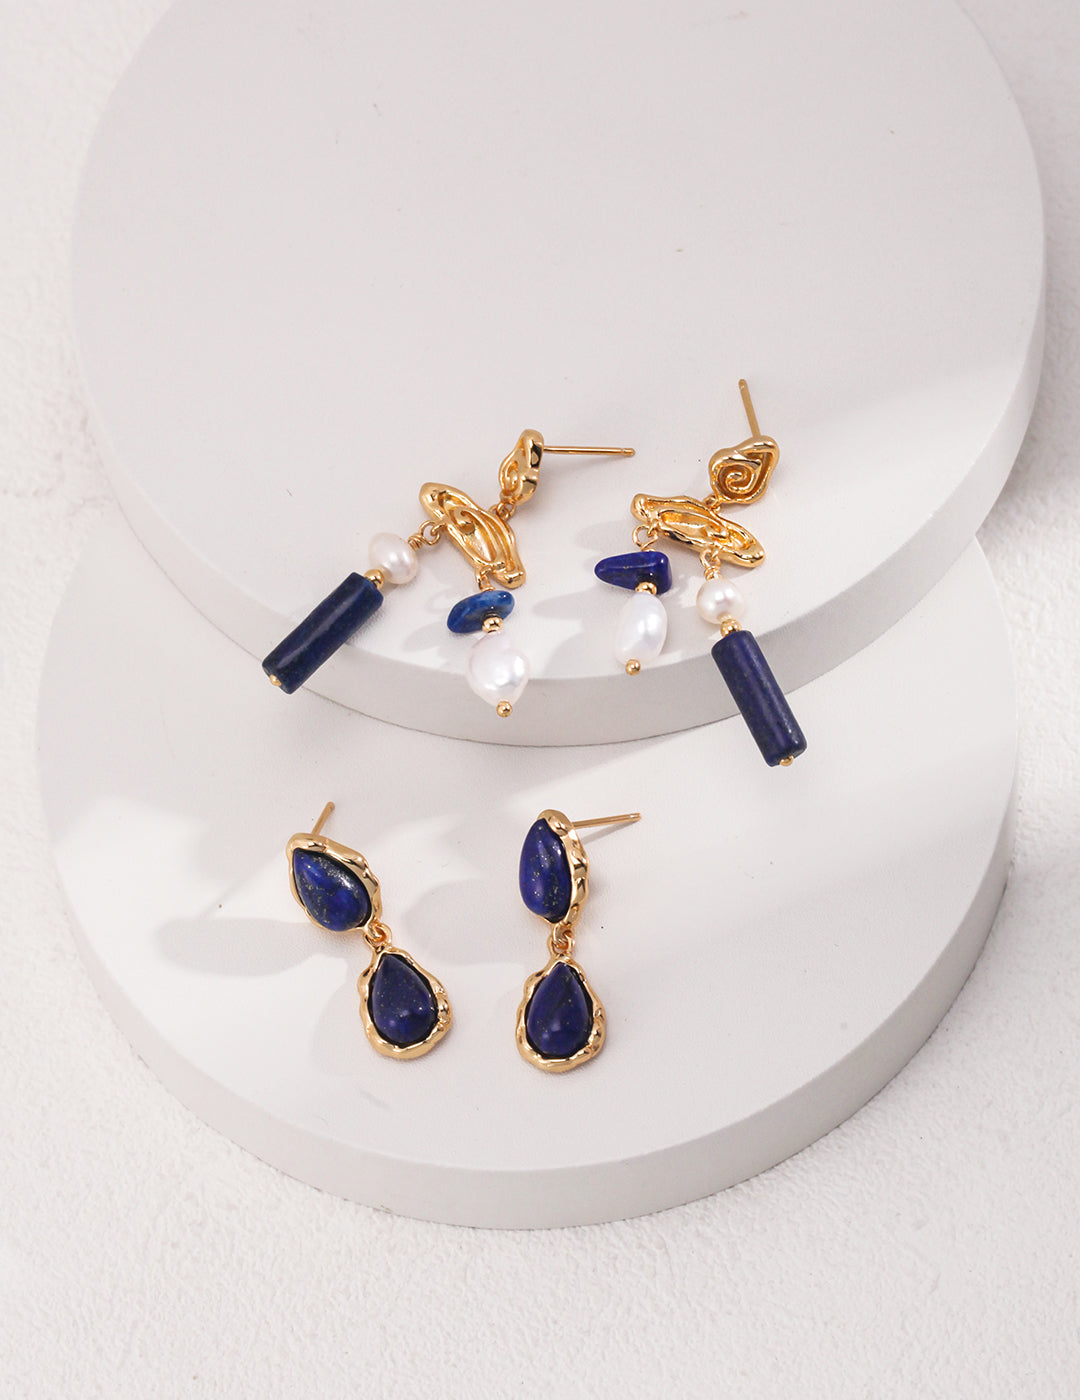 Two Drop-shaped Gold Lapis Lazuli Earrings